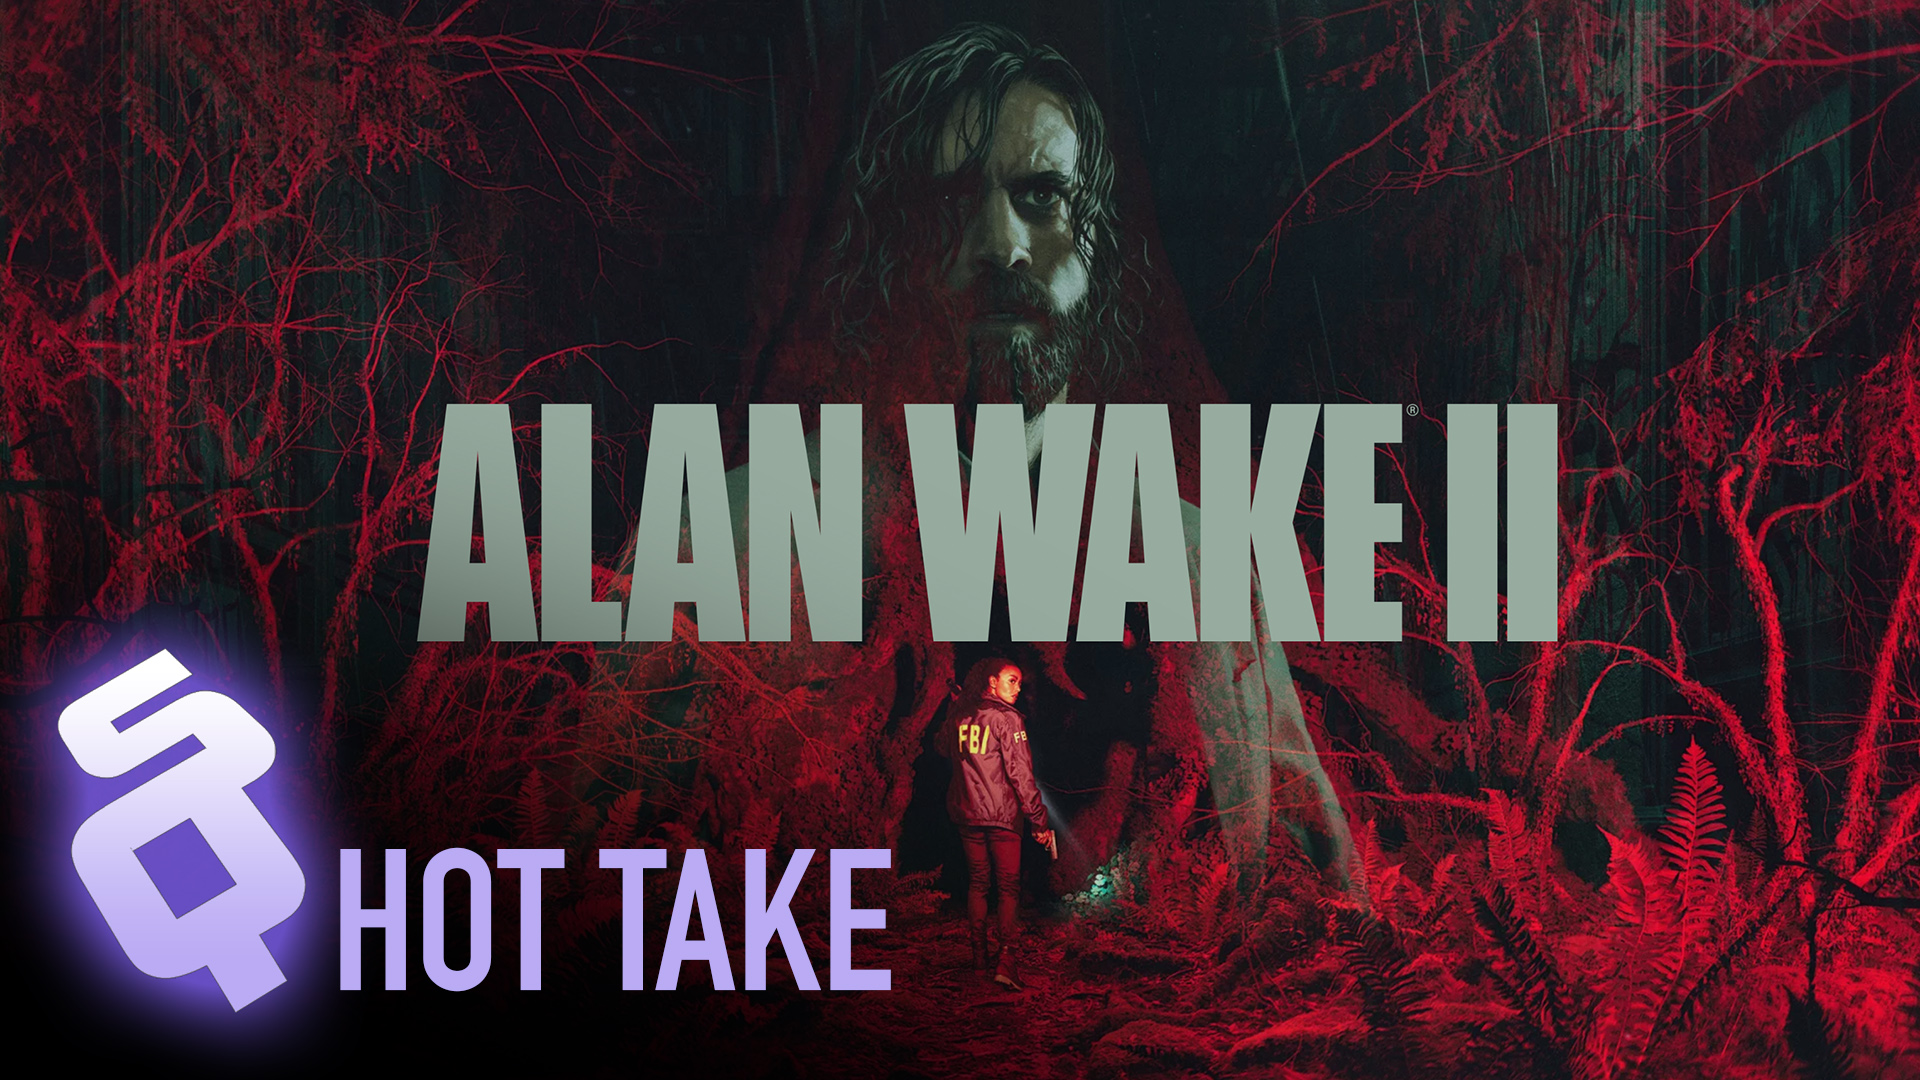 Alan Wake 2 hot take review